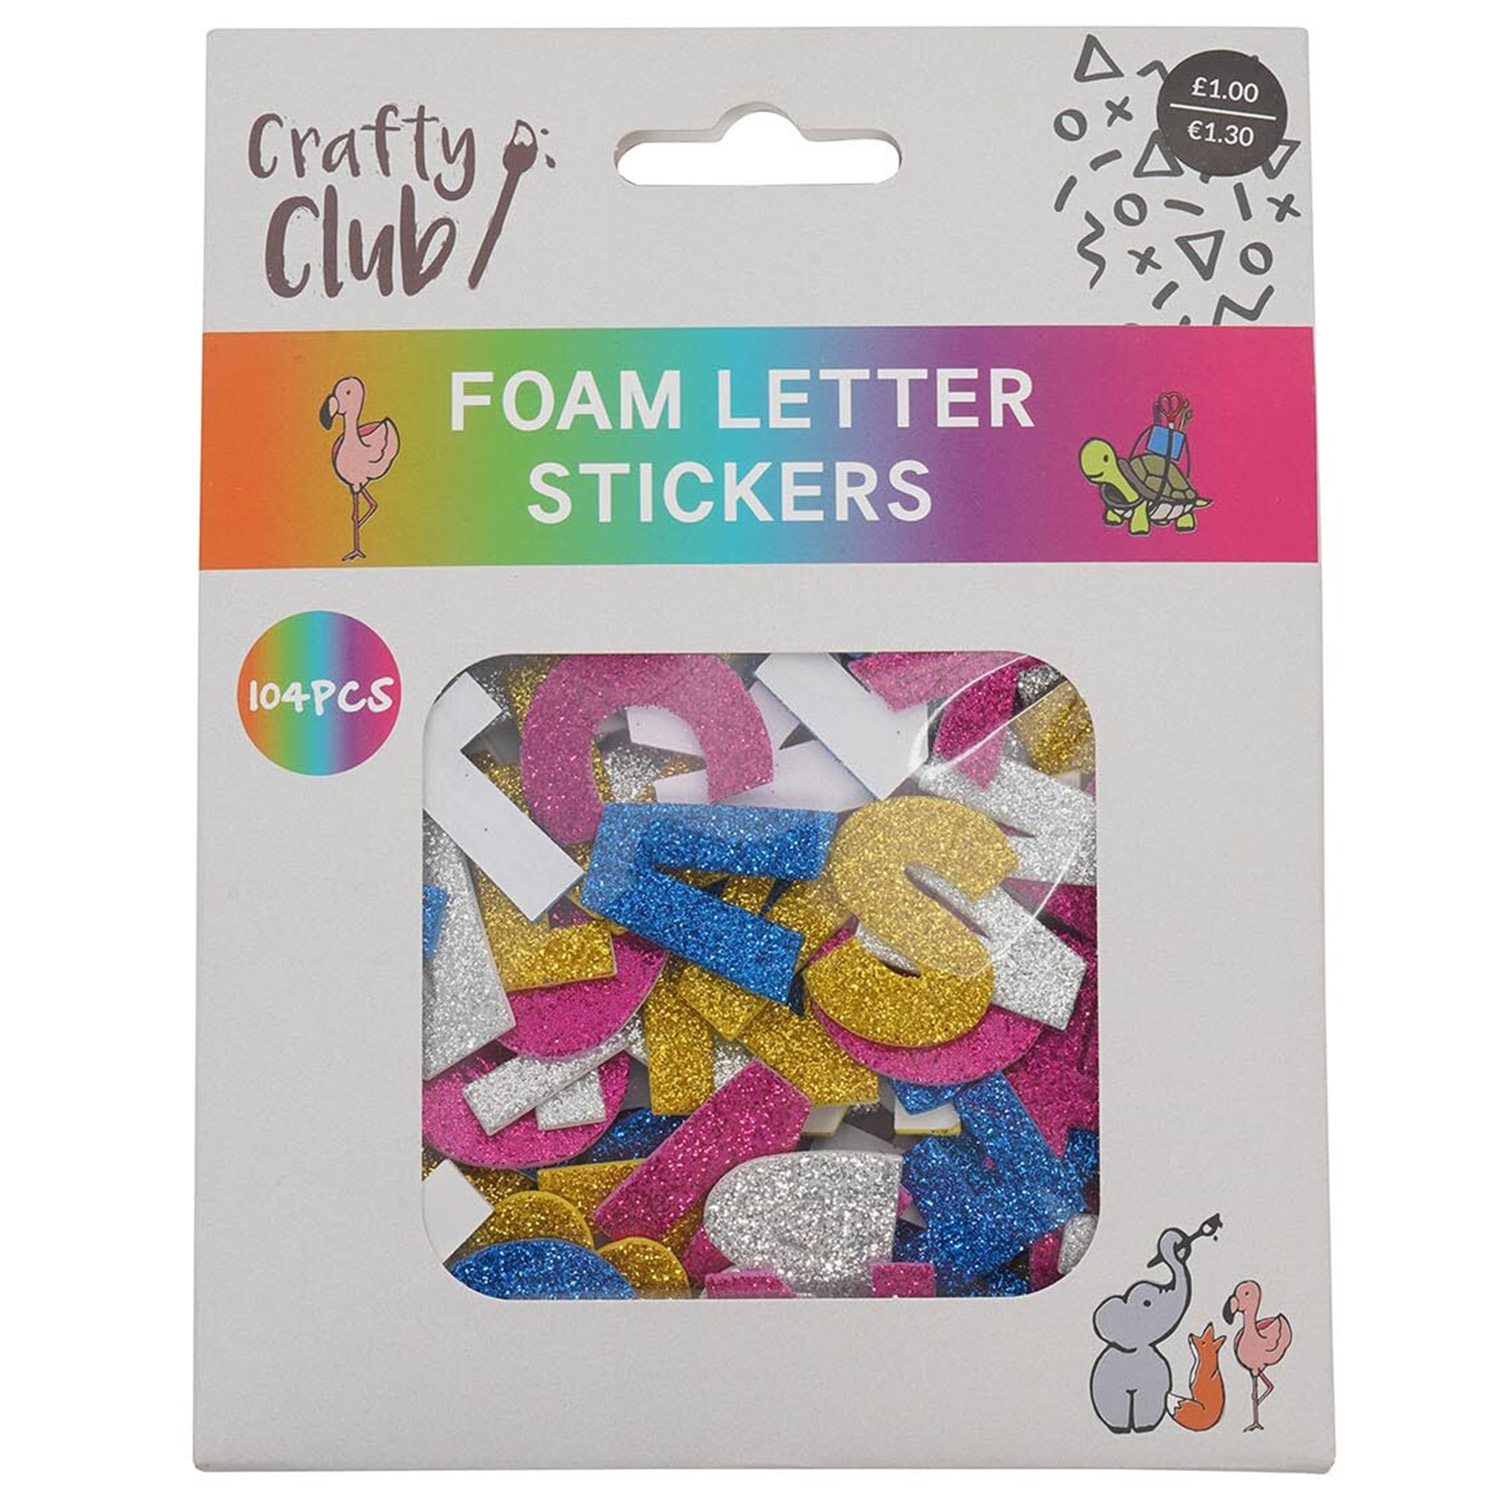 Foam Letter Stickers Image 1